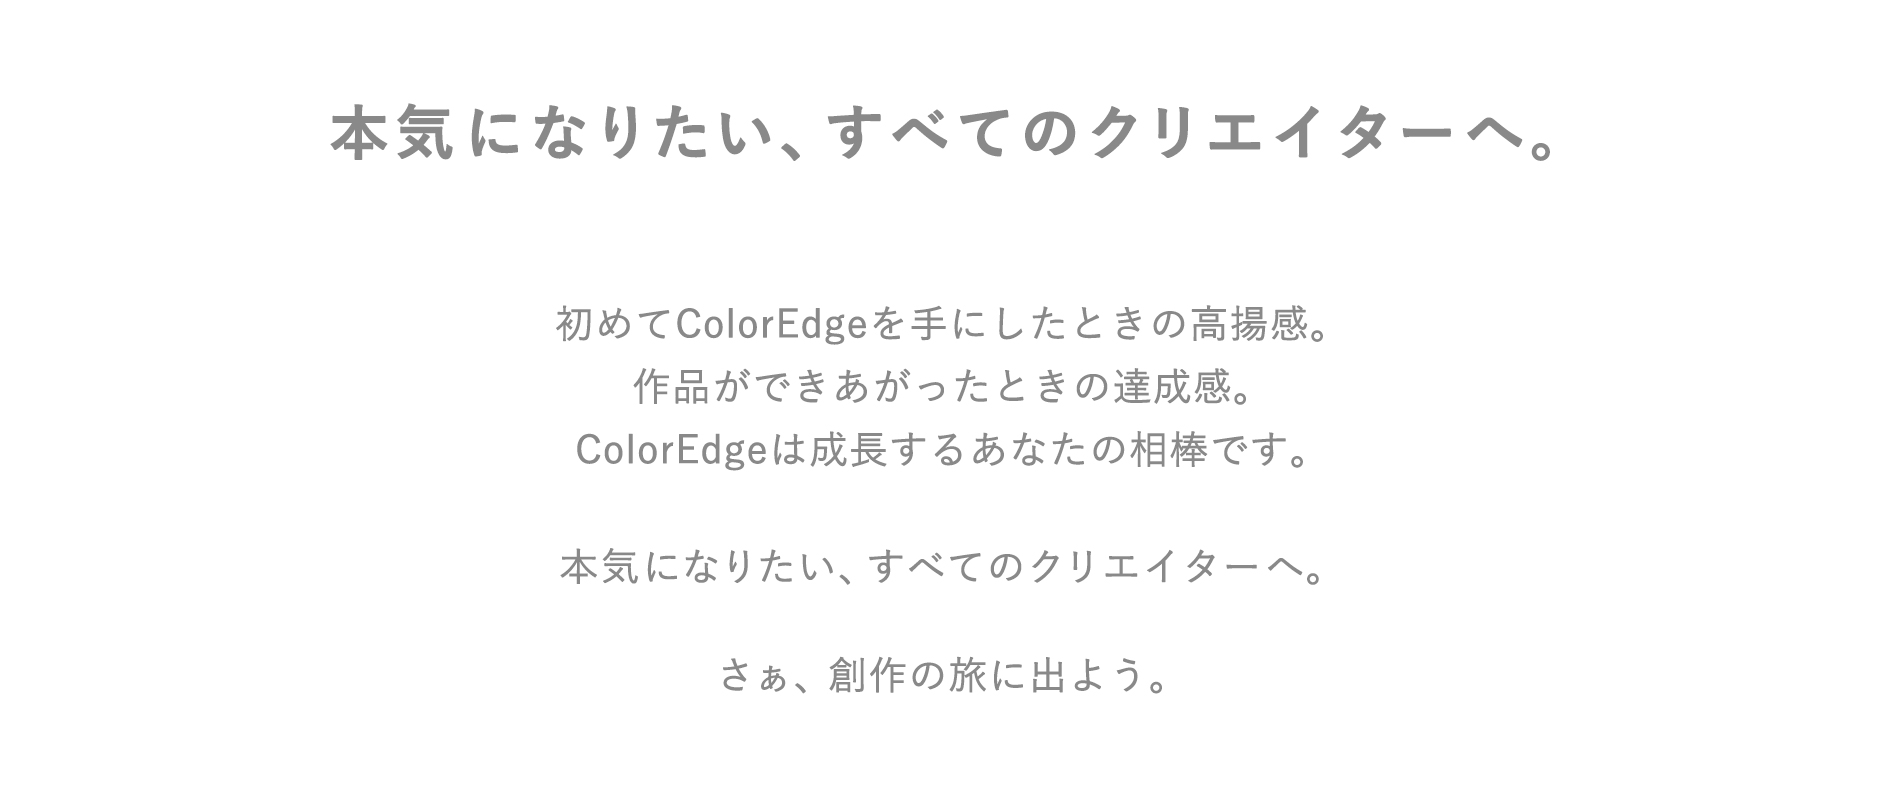 ColorEdge_CS2400S_pc_text.jpg